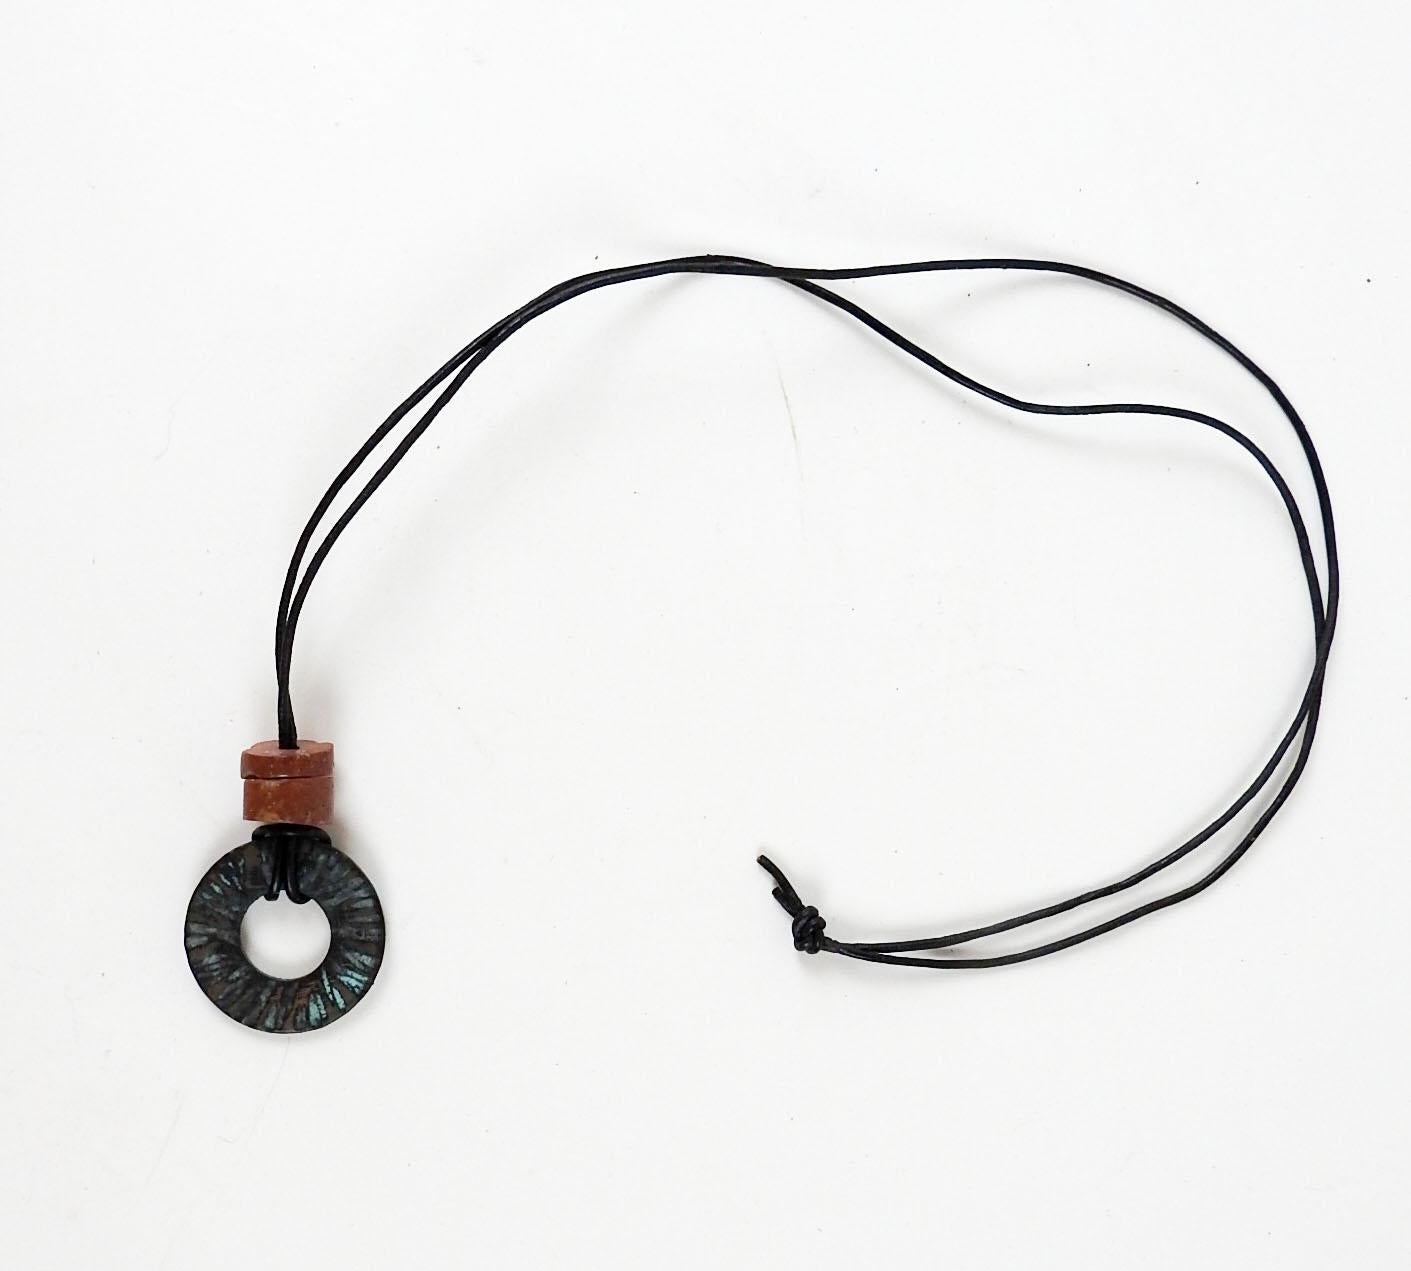 Cercle en bronze patiné martelé des années 1990 avec accent en perles de bauxite. Sur un fin cordon rond en cuir noir, le pendentif fait 1,25